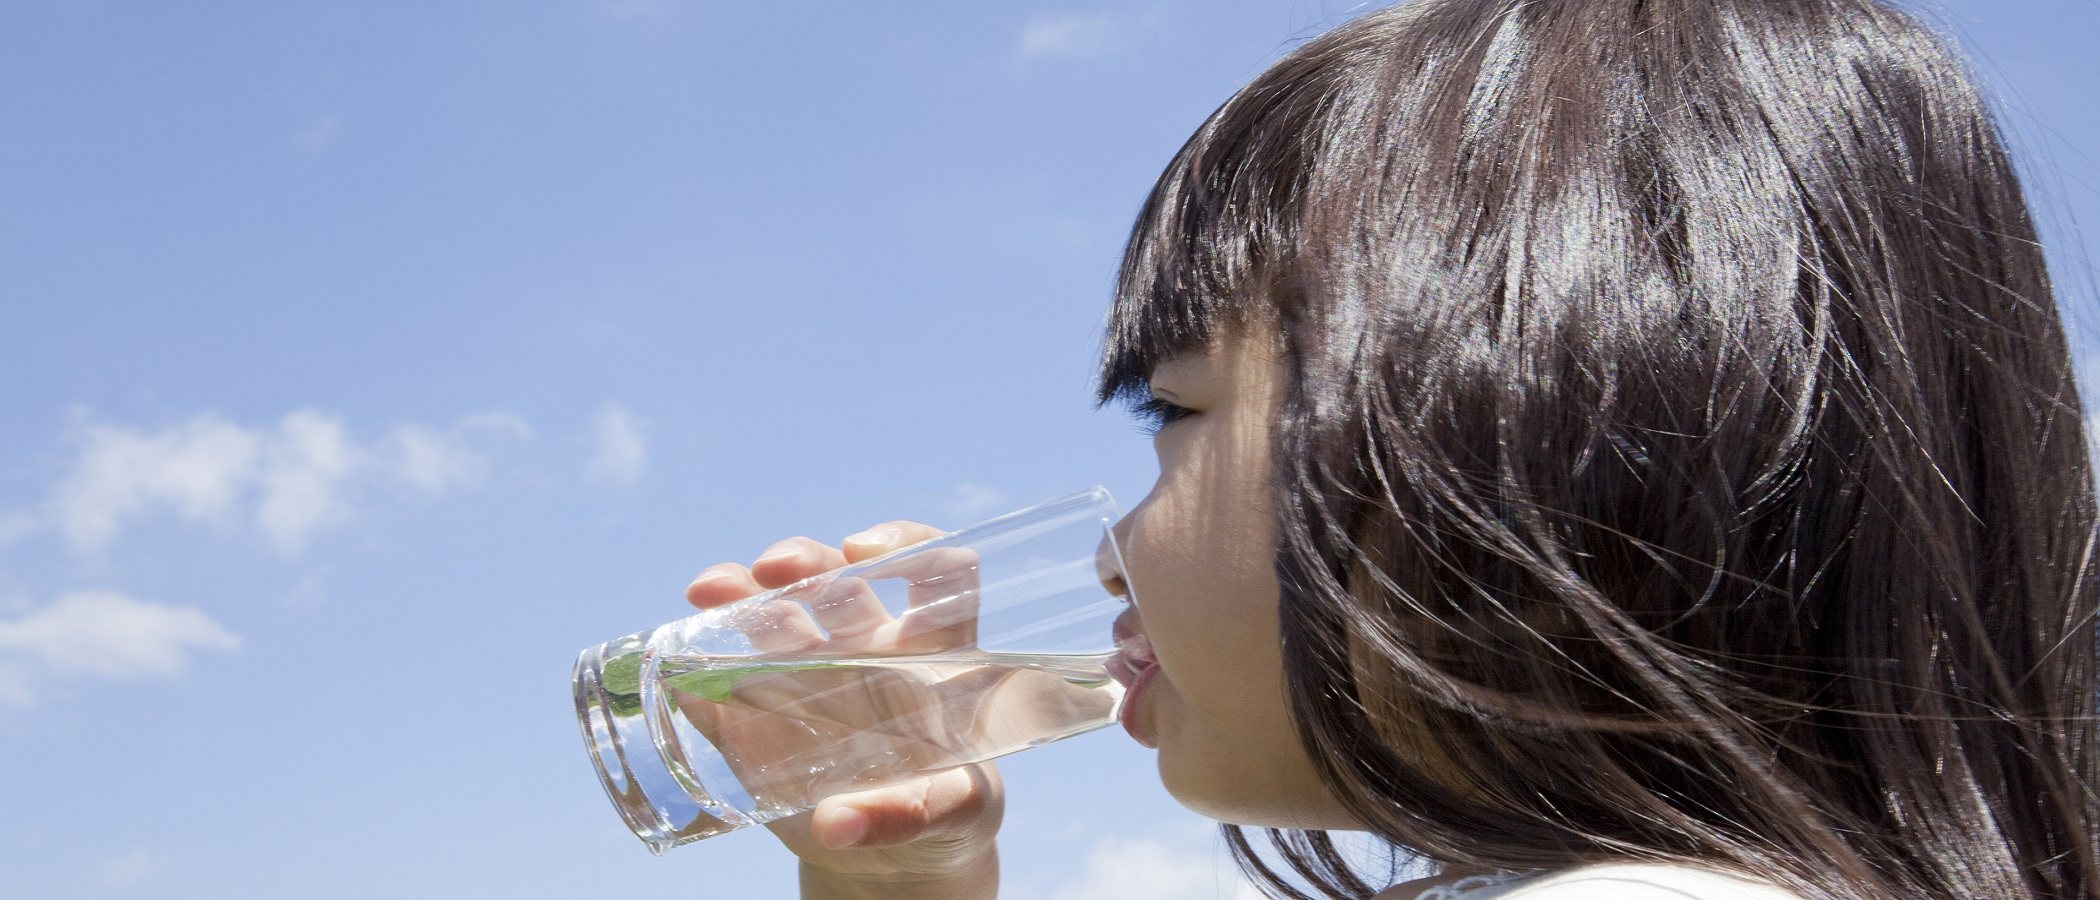 Cuánta agua deben beber los niños